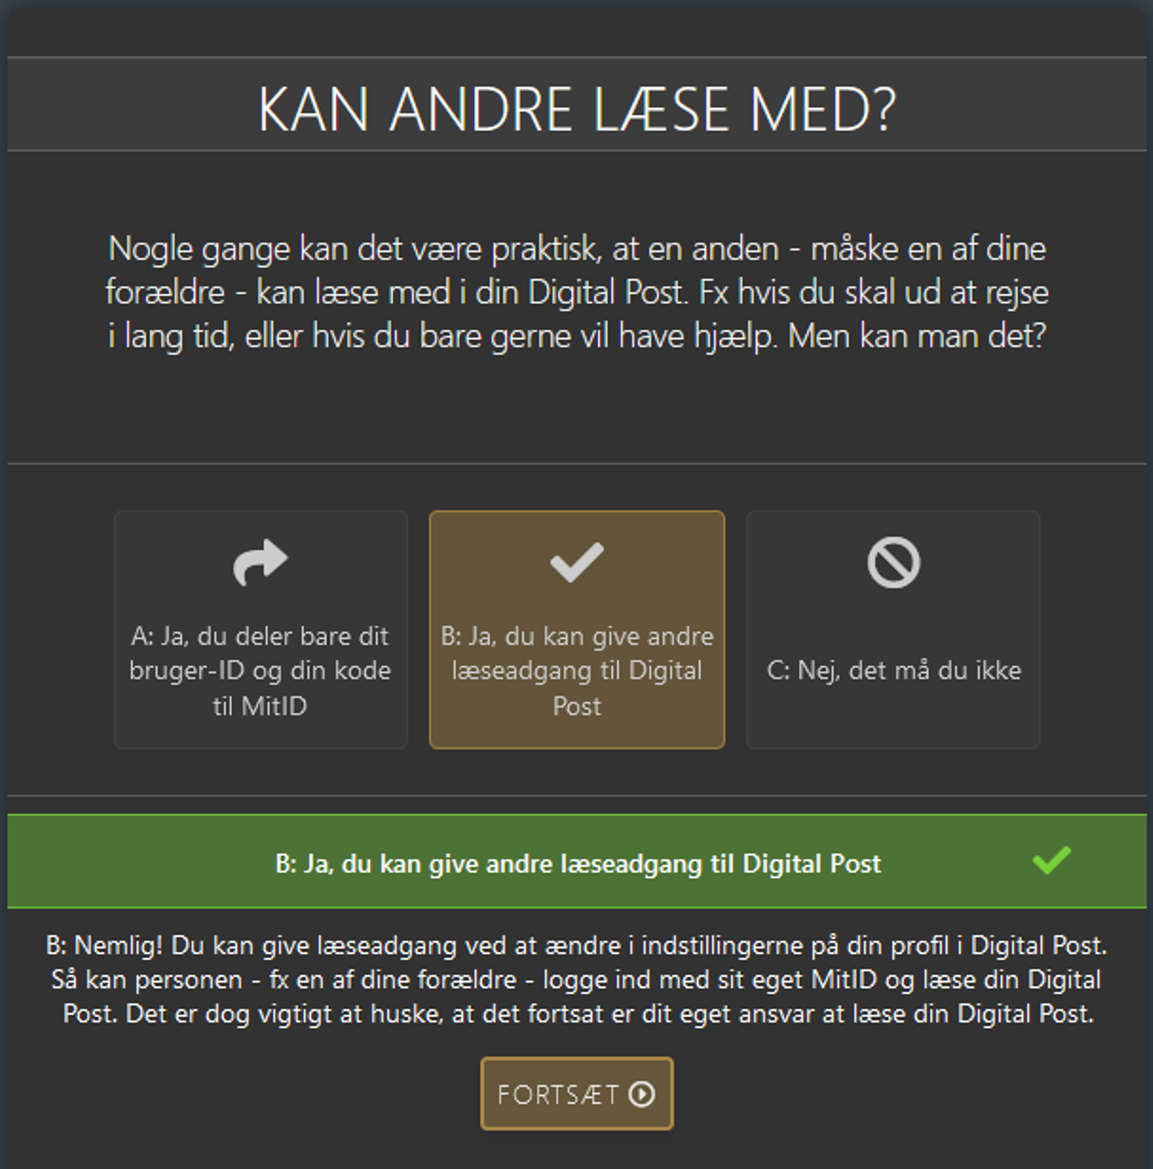 Billedet viser screenshot fra quizmodulet på digitalstart.dk. Hér et spørgsmål om læseadgang til Digital Post.